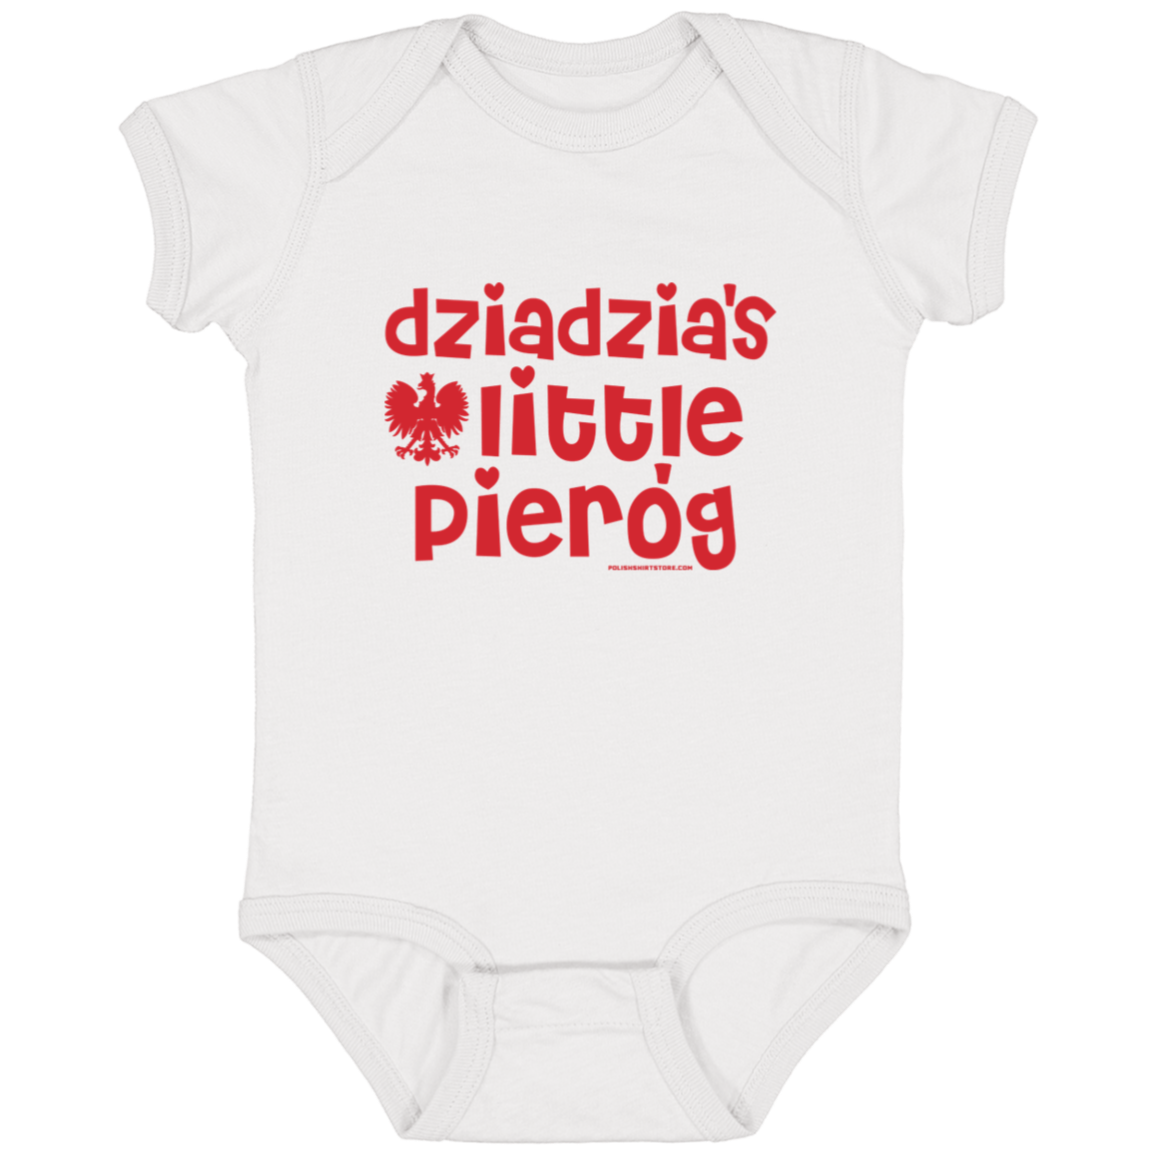 Dziadzia's Little Pierogi Infant Bodysuit Baby CustomCat White Newborn 